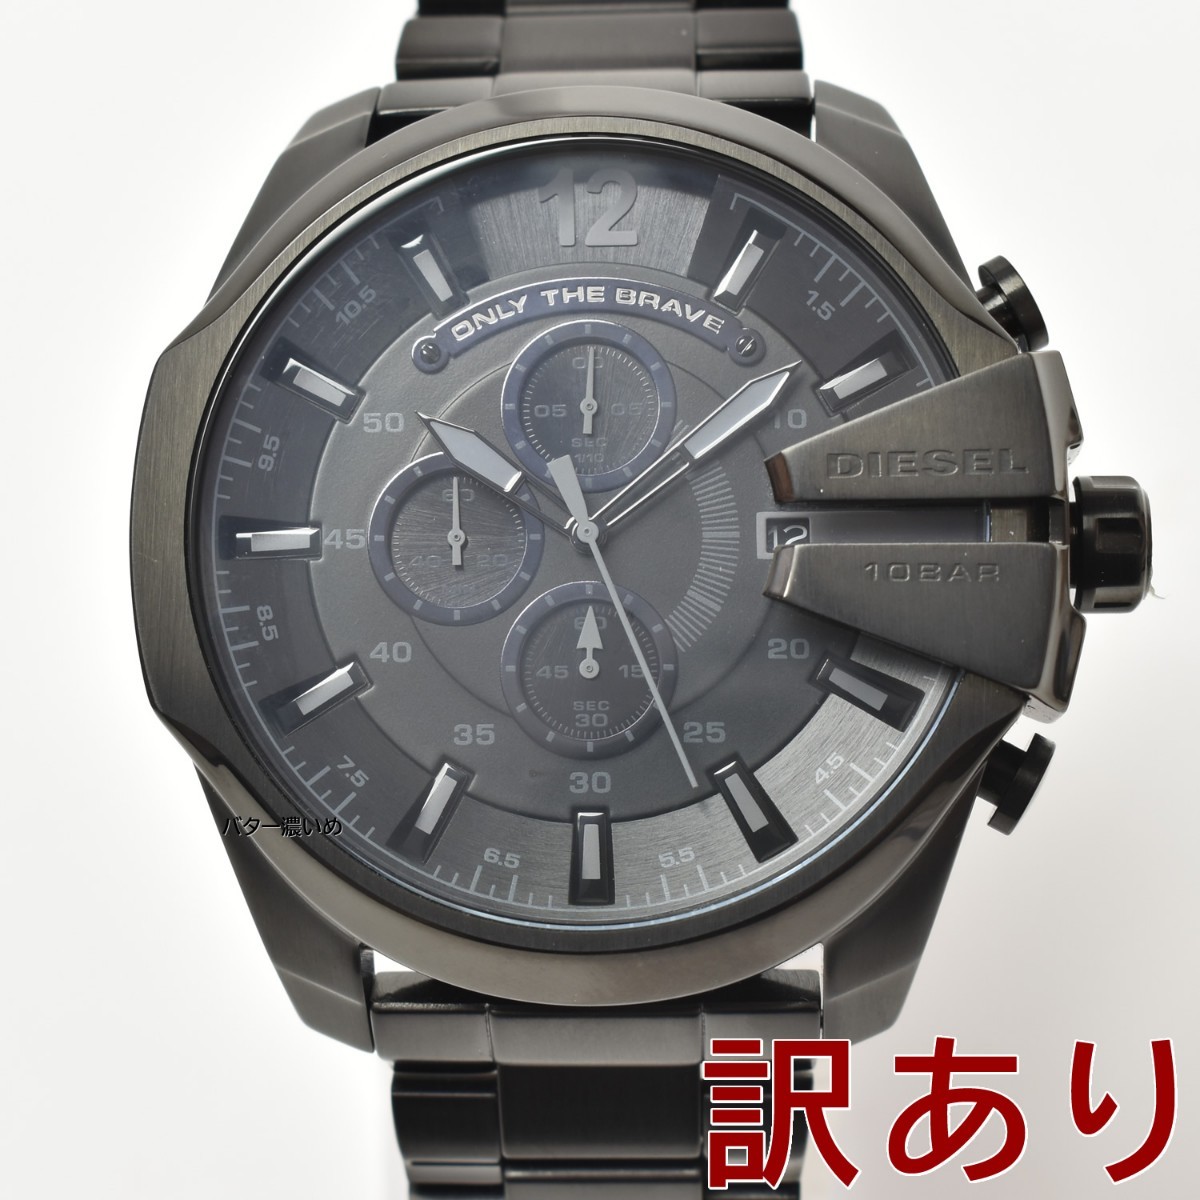 訳あり ディーゼル DIESEL メンズ 腕時計 DZ4355 メガチーフ ブラック クロノグラフ クオーツ ステンレスベルト ビッグフェイス 未使用